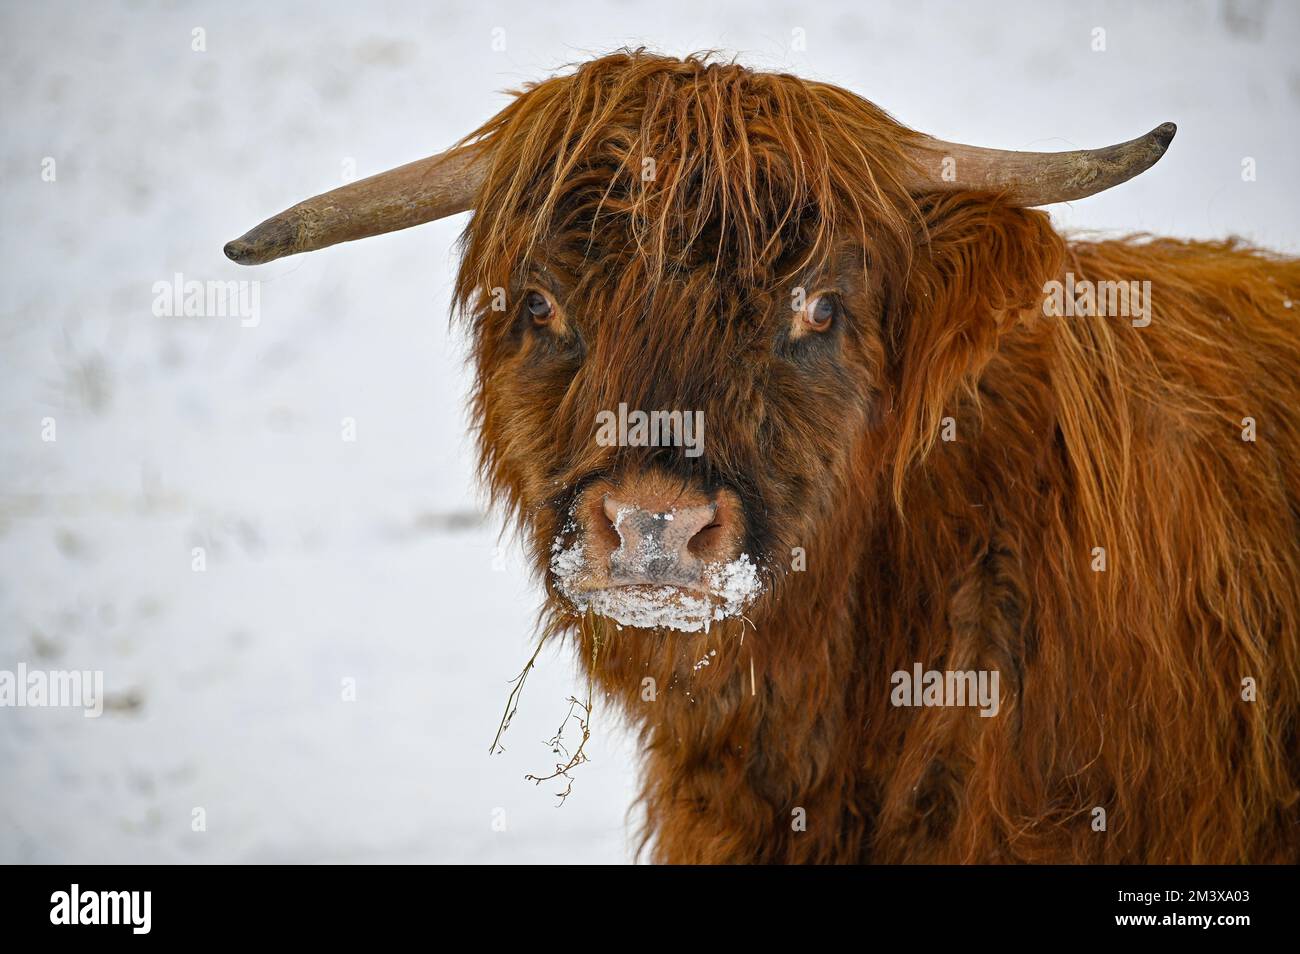 Higland cattle standing in snow Kumla Sweden Stock Photo